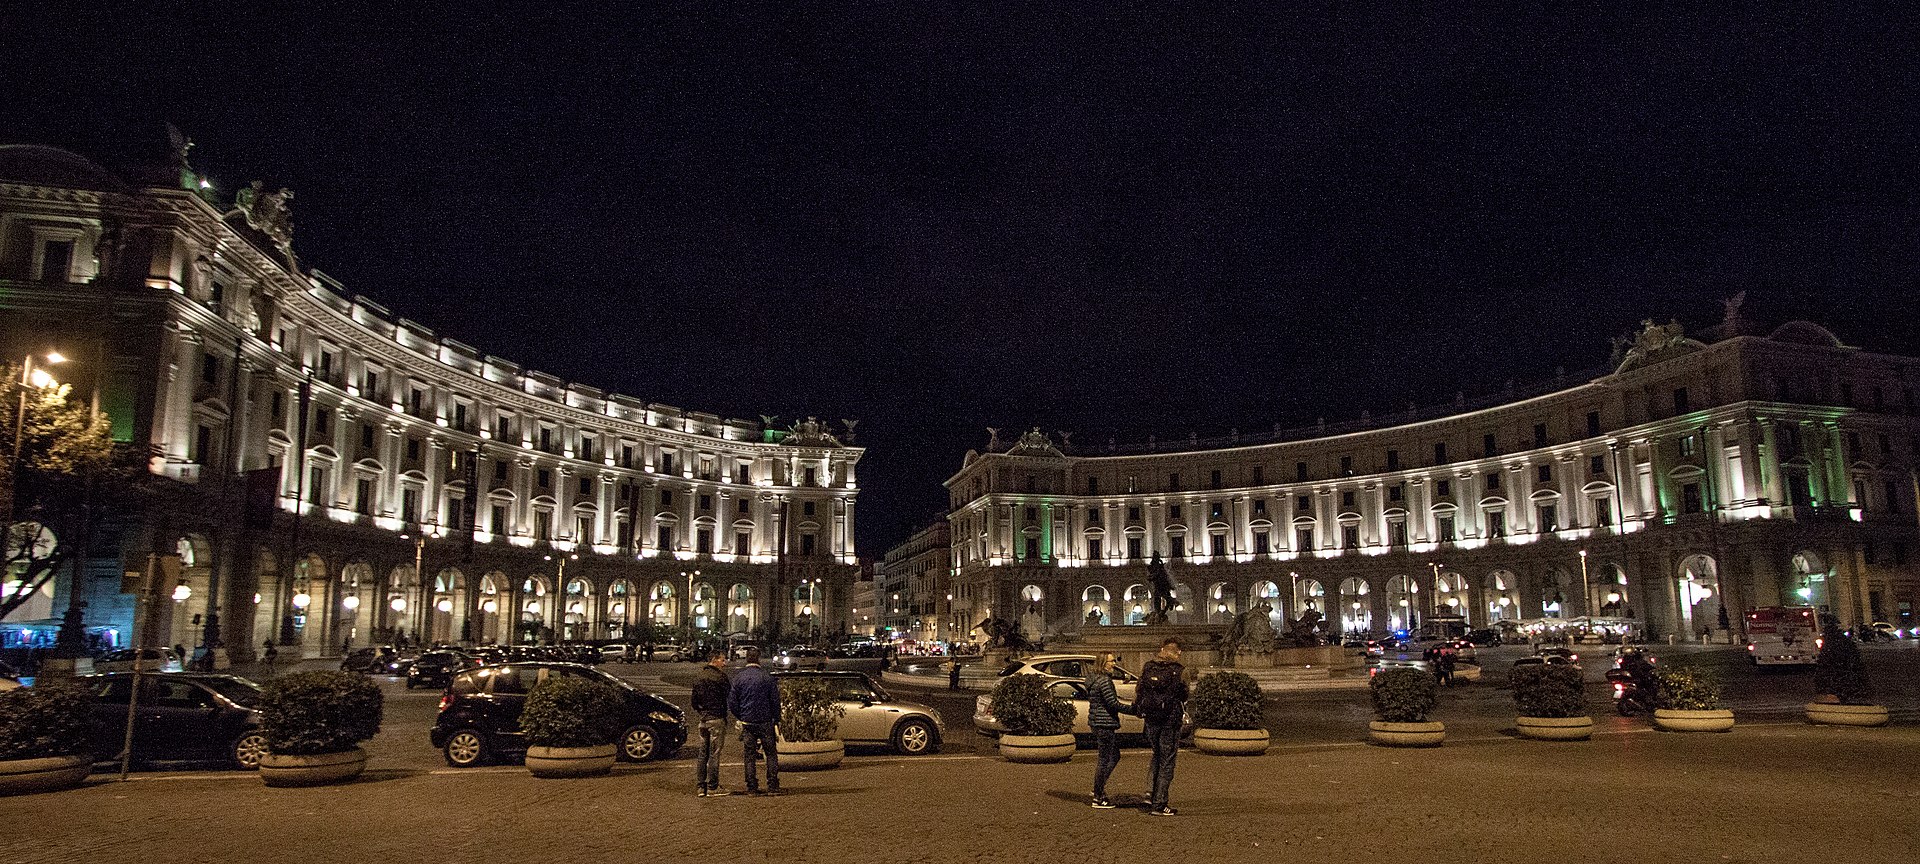 Piazza della Repubblica at night 4